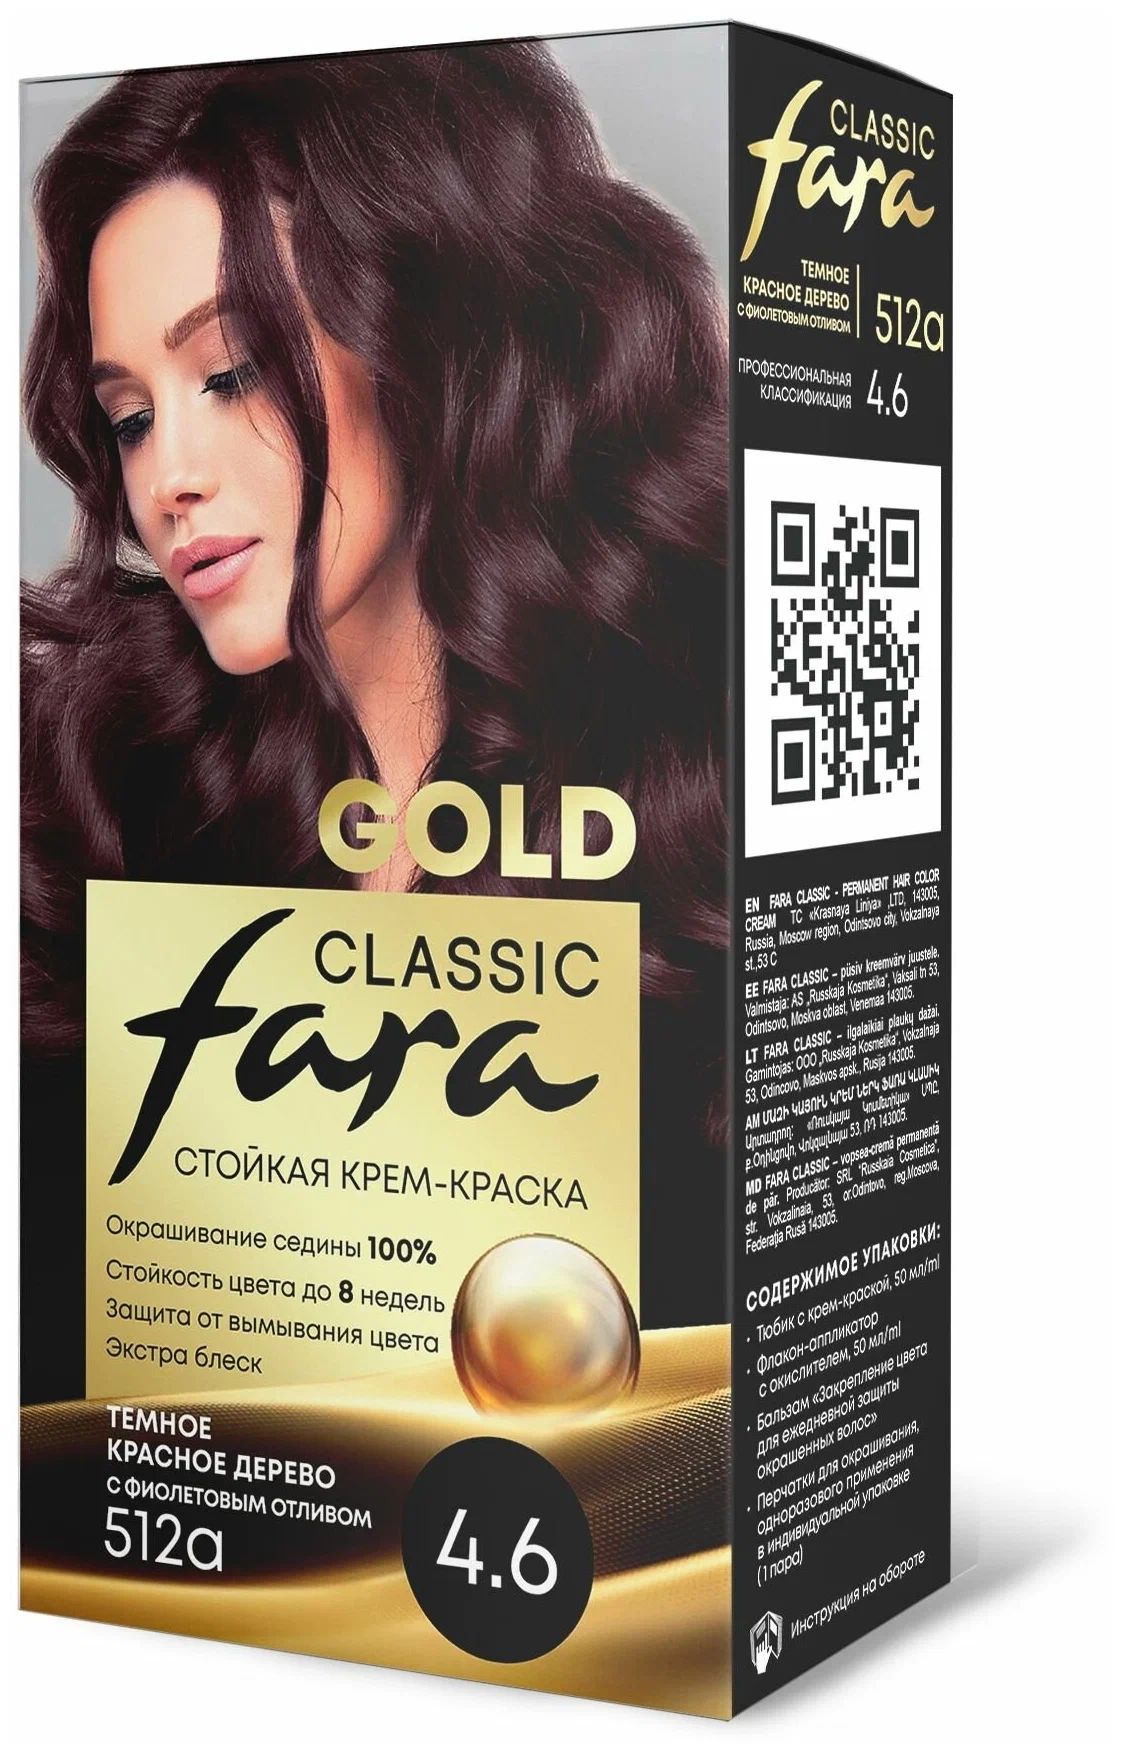 Крем-краска для волос Fara Classic Gold 512А красное дерево 4.6, 140 г русская религиозная аксиология